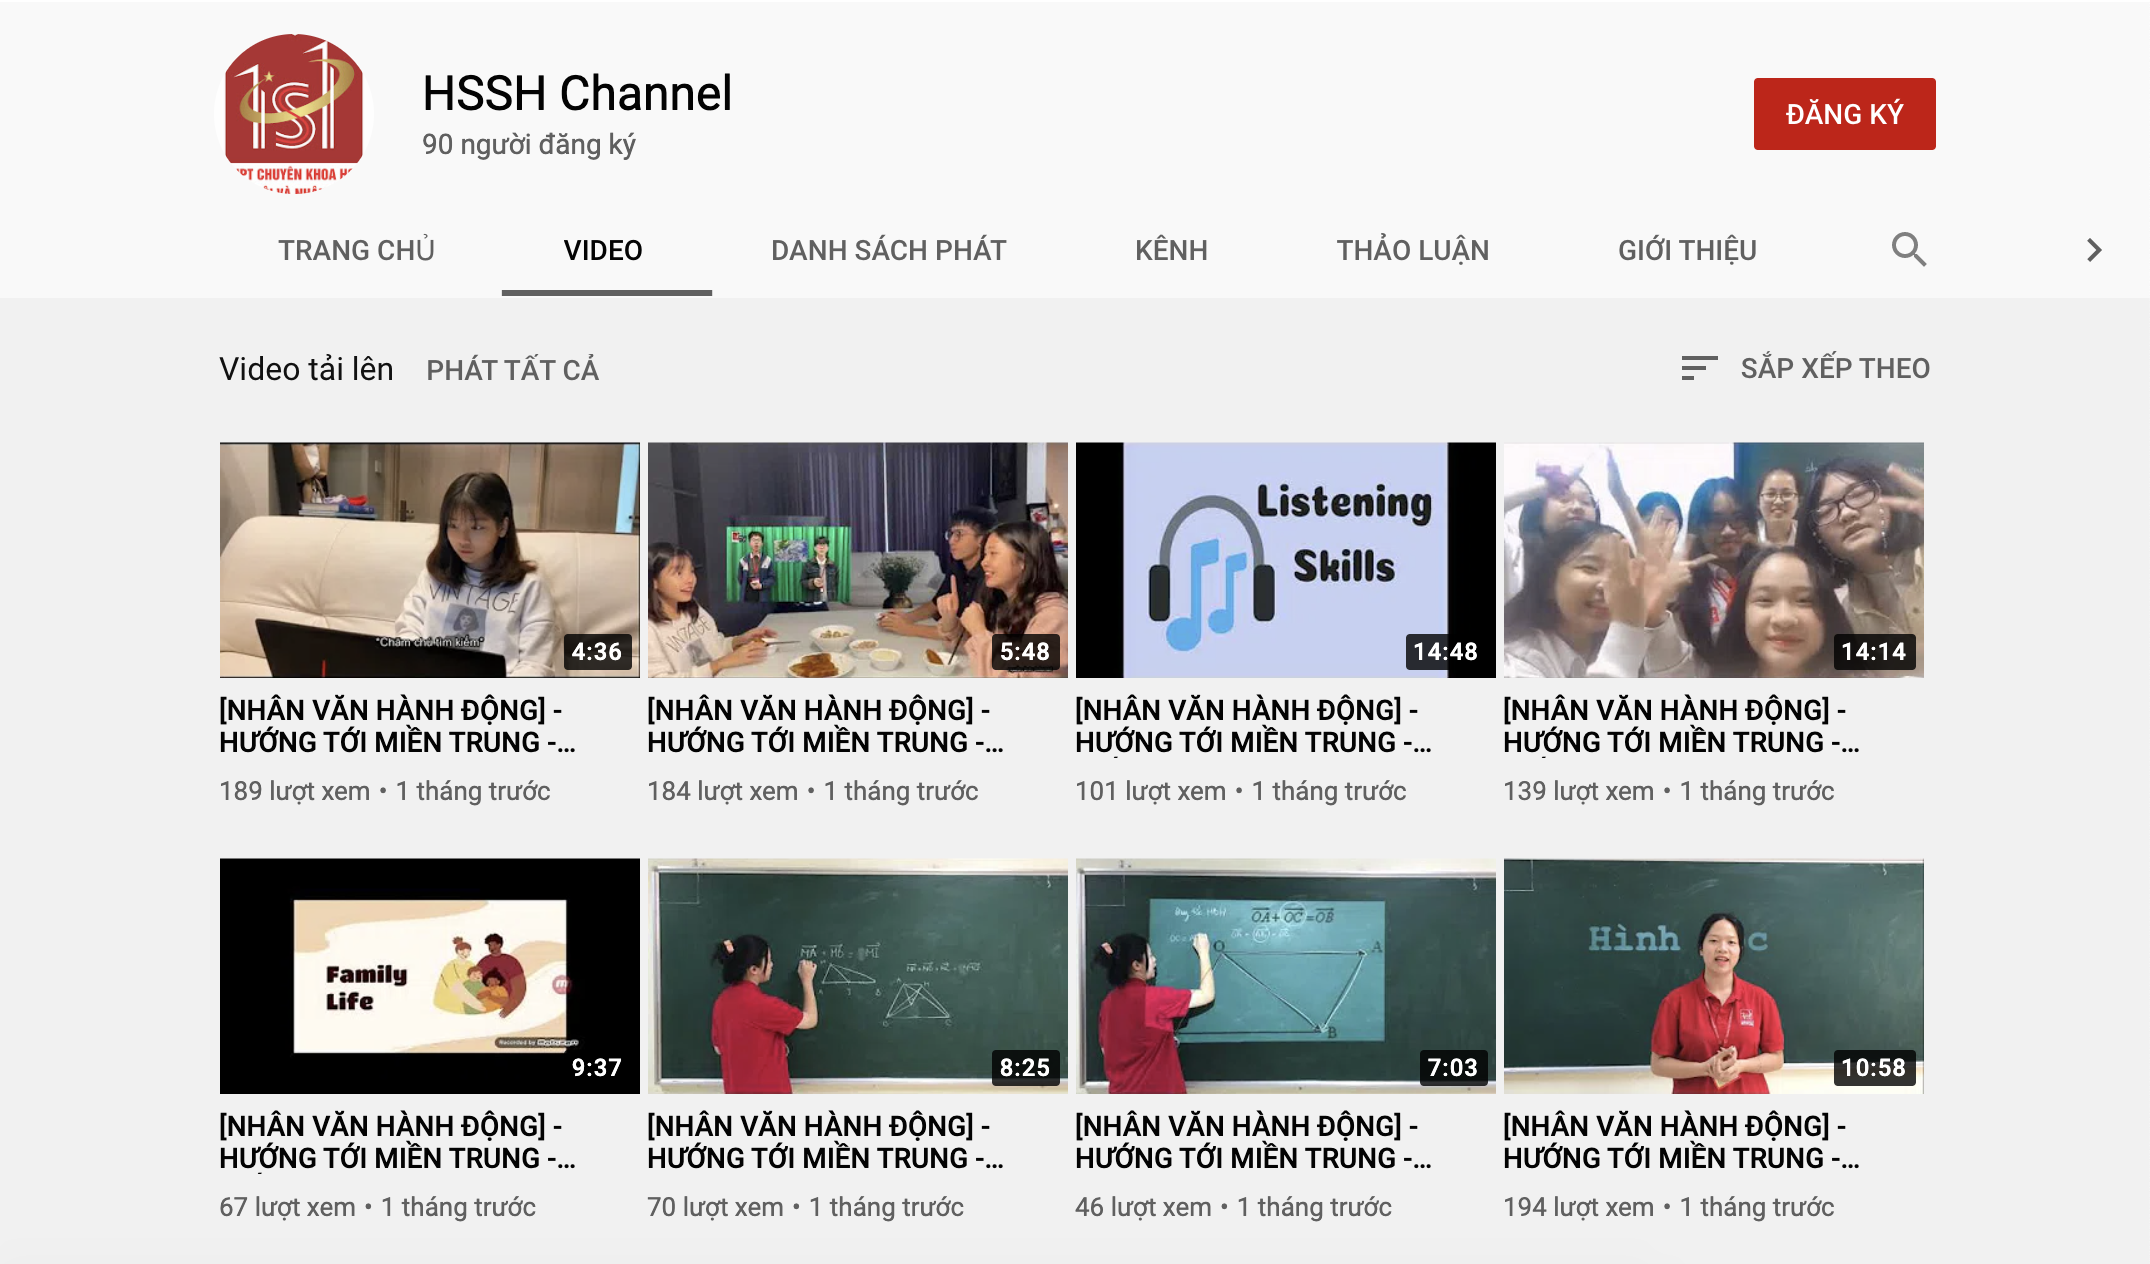 Các clip dạy học được đăng tải lên các trang mạng xã hội và kênh Youtube HSSH Channel. Ảnh chụp màn hình